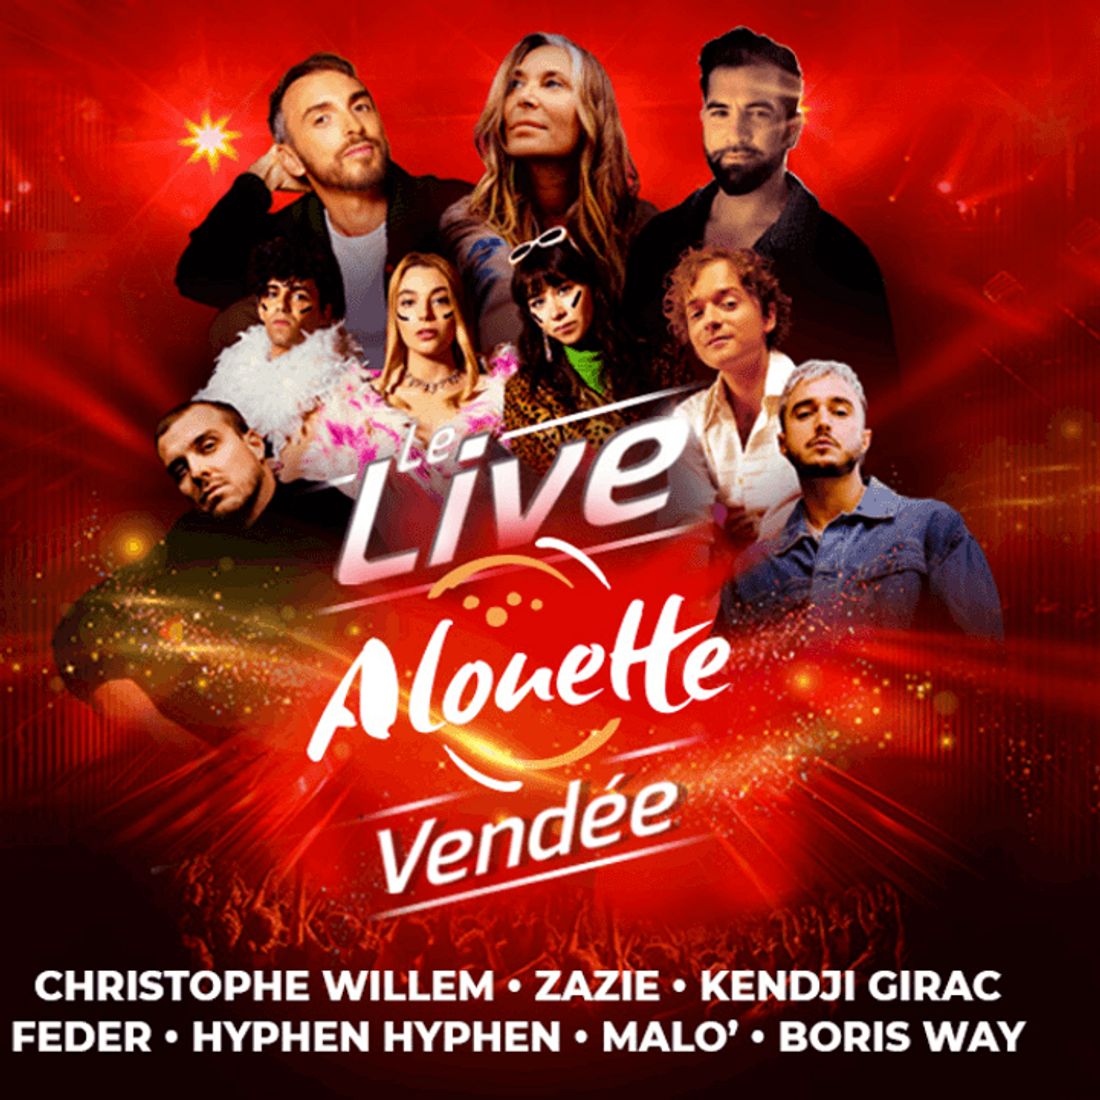 Découvrez la programmation du Live Alouette Vendée !